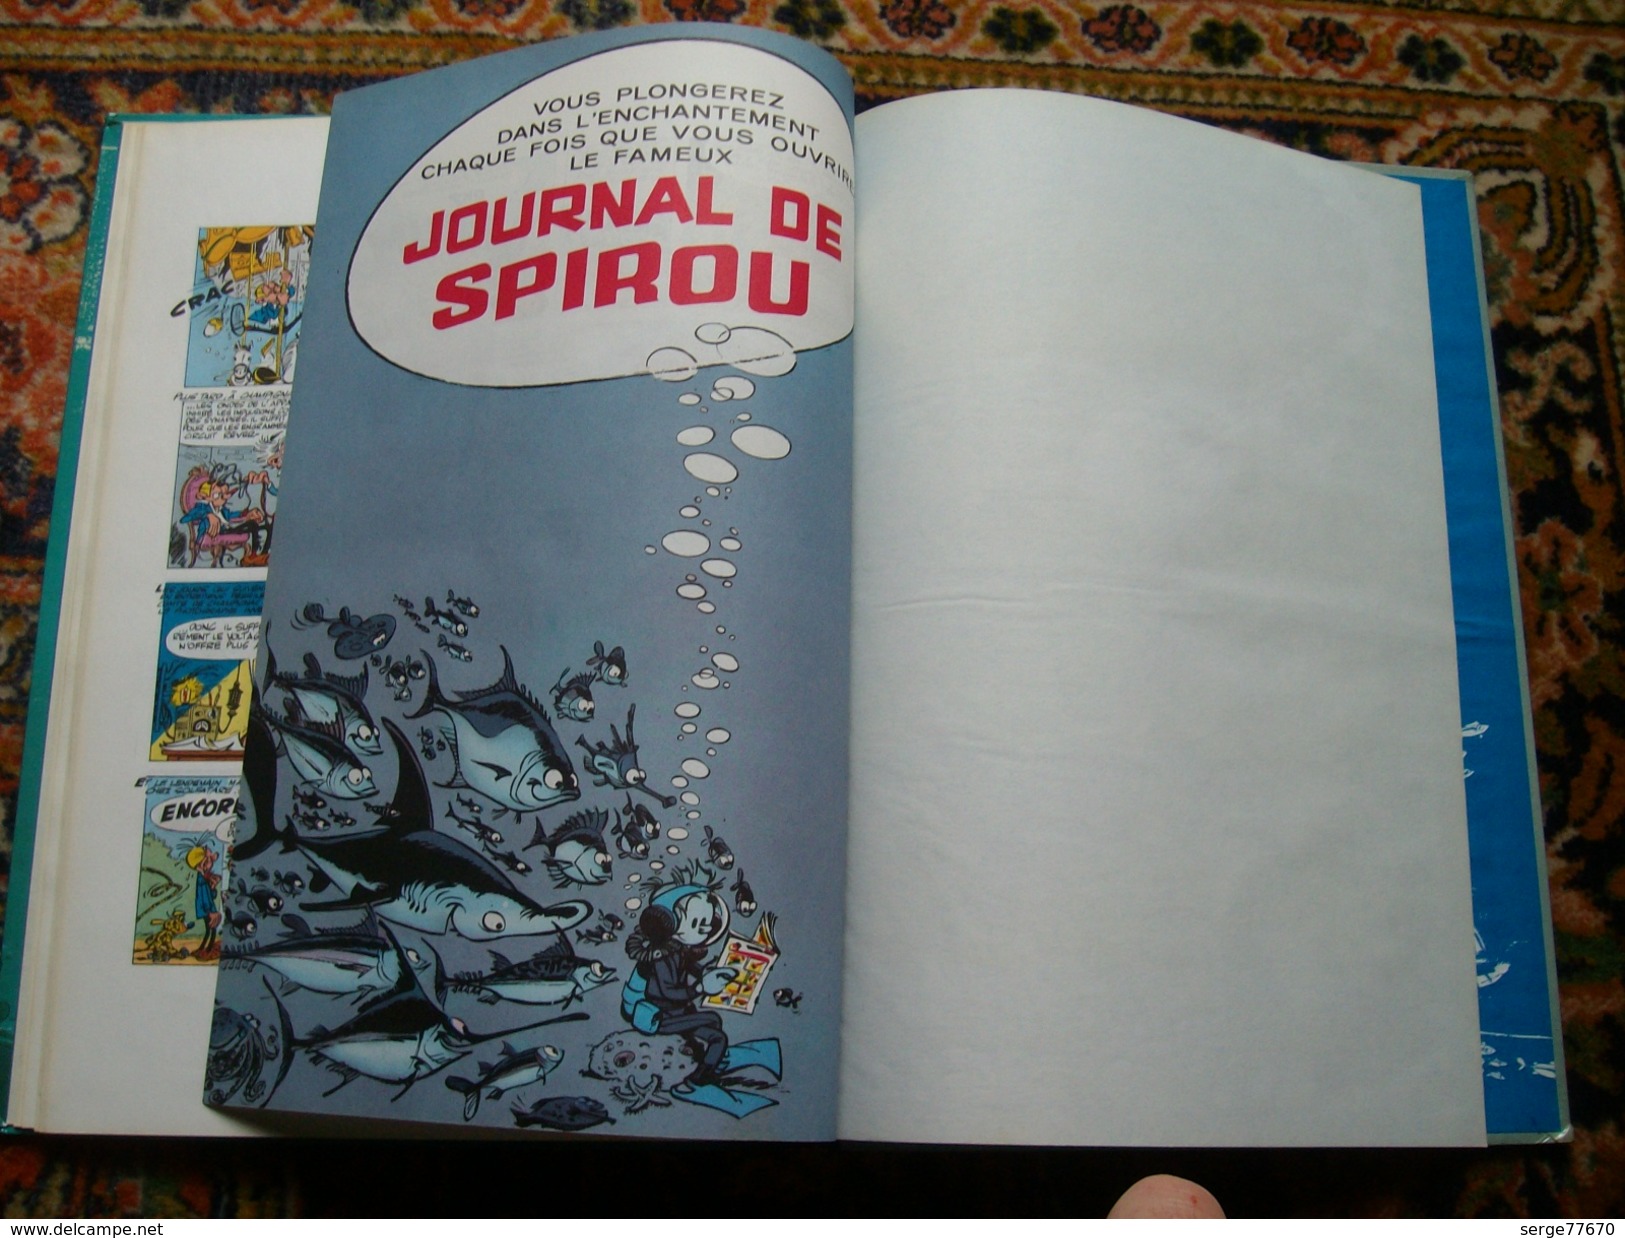 Spirou et Fantasio Franquin et les hommes bulles édition 1968 Dupuis